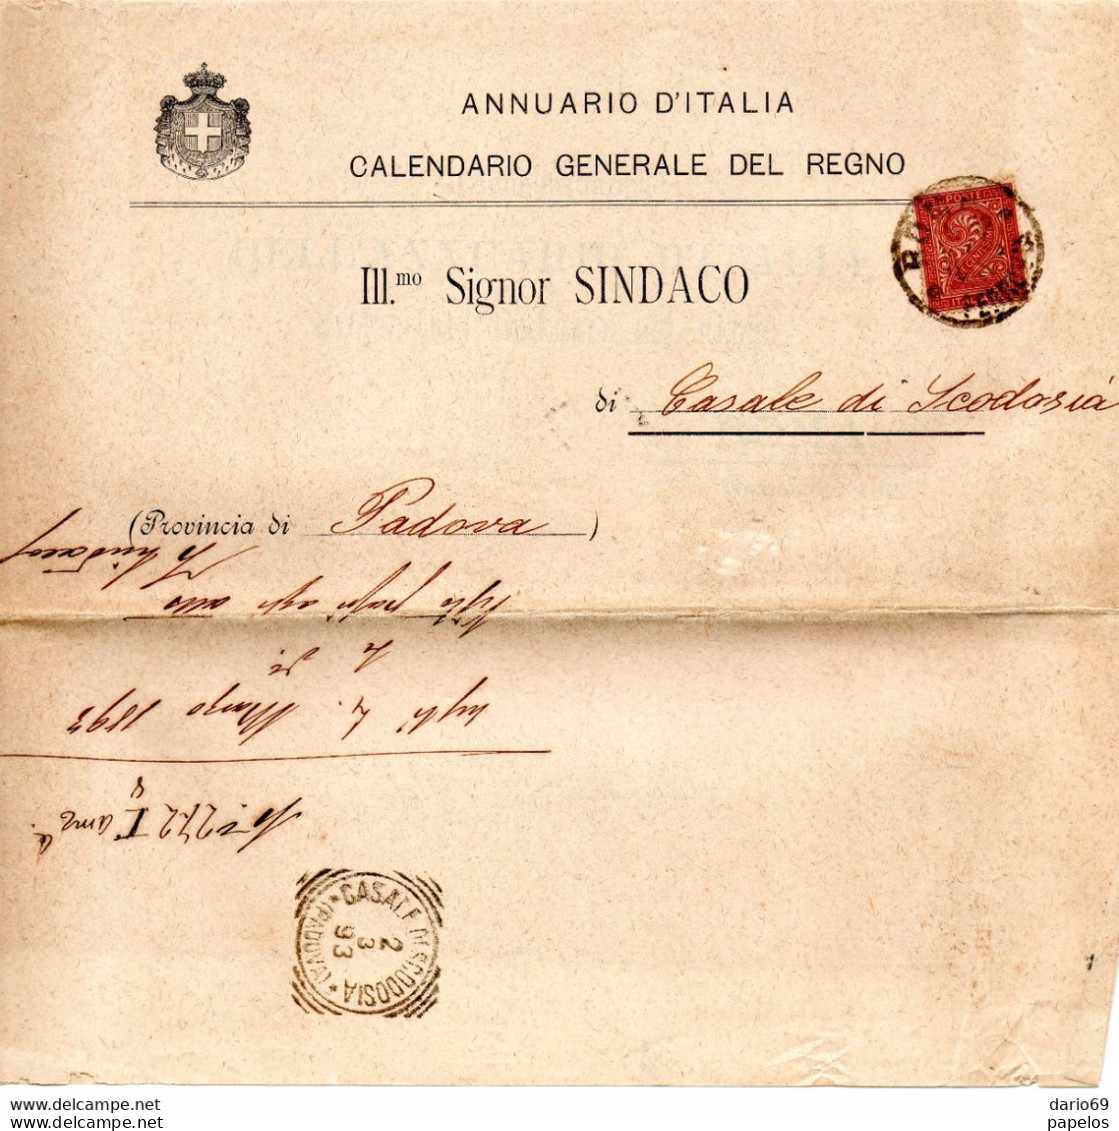 1893 CALENDARIO GENERALE DEL REGNO - Italy